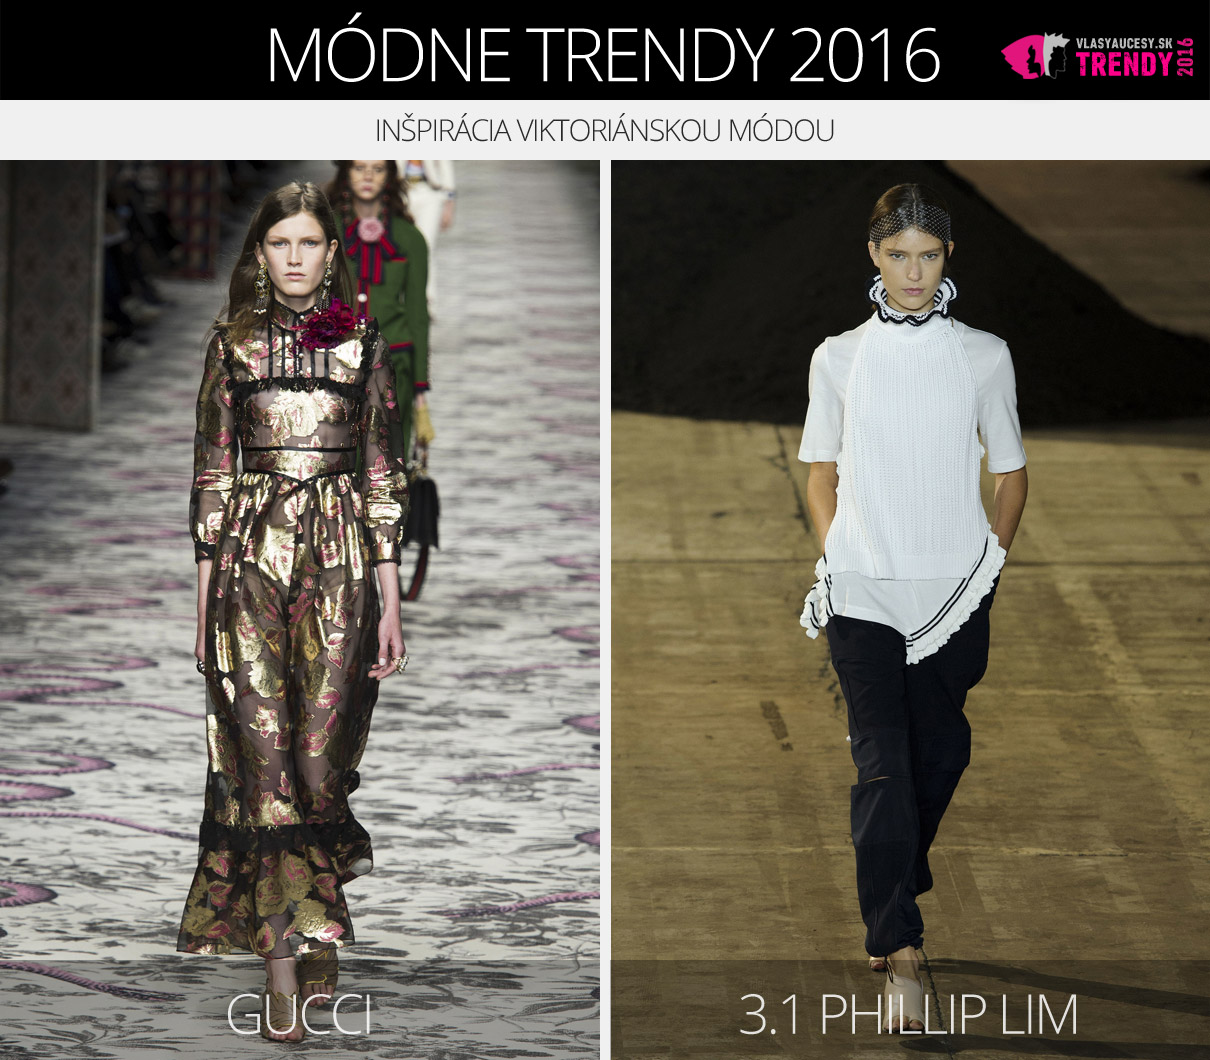 Módne trendy 2016 – inšpirácia viktoriánskou módou. (Zľava: Gucci a 3.1 Phillip Lim.)